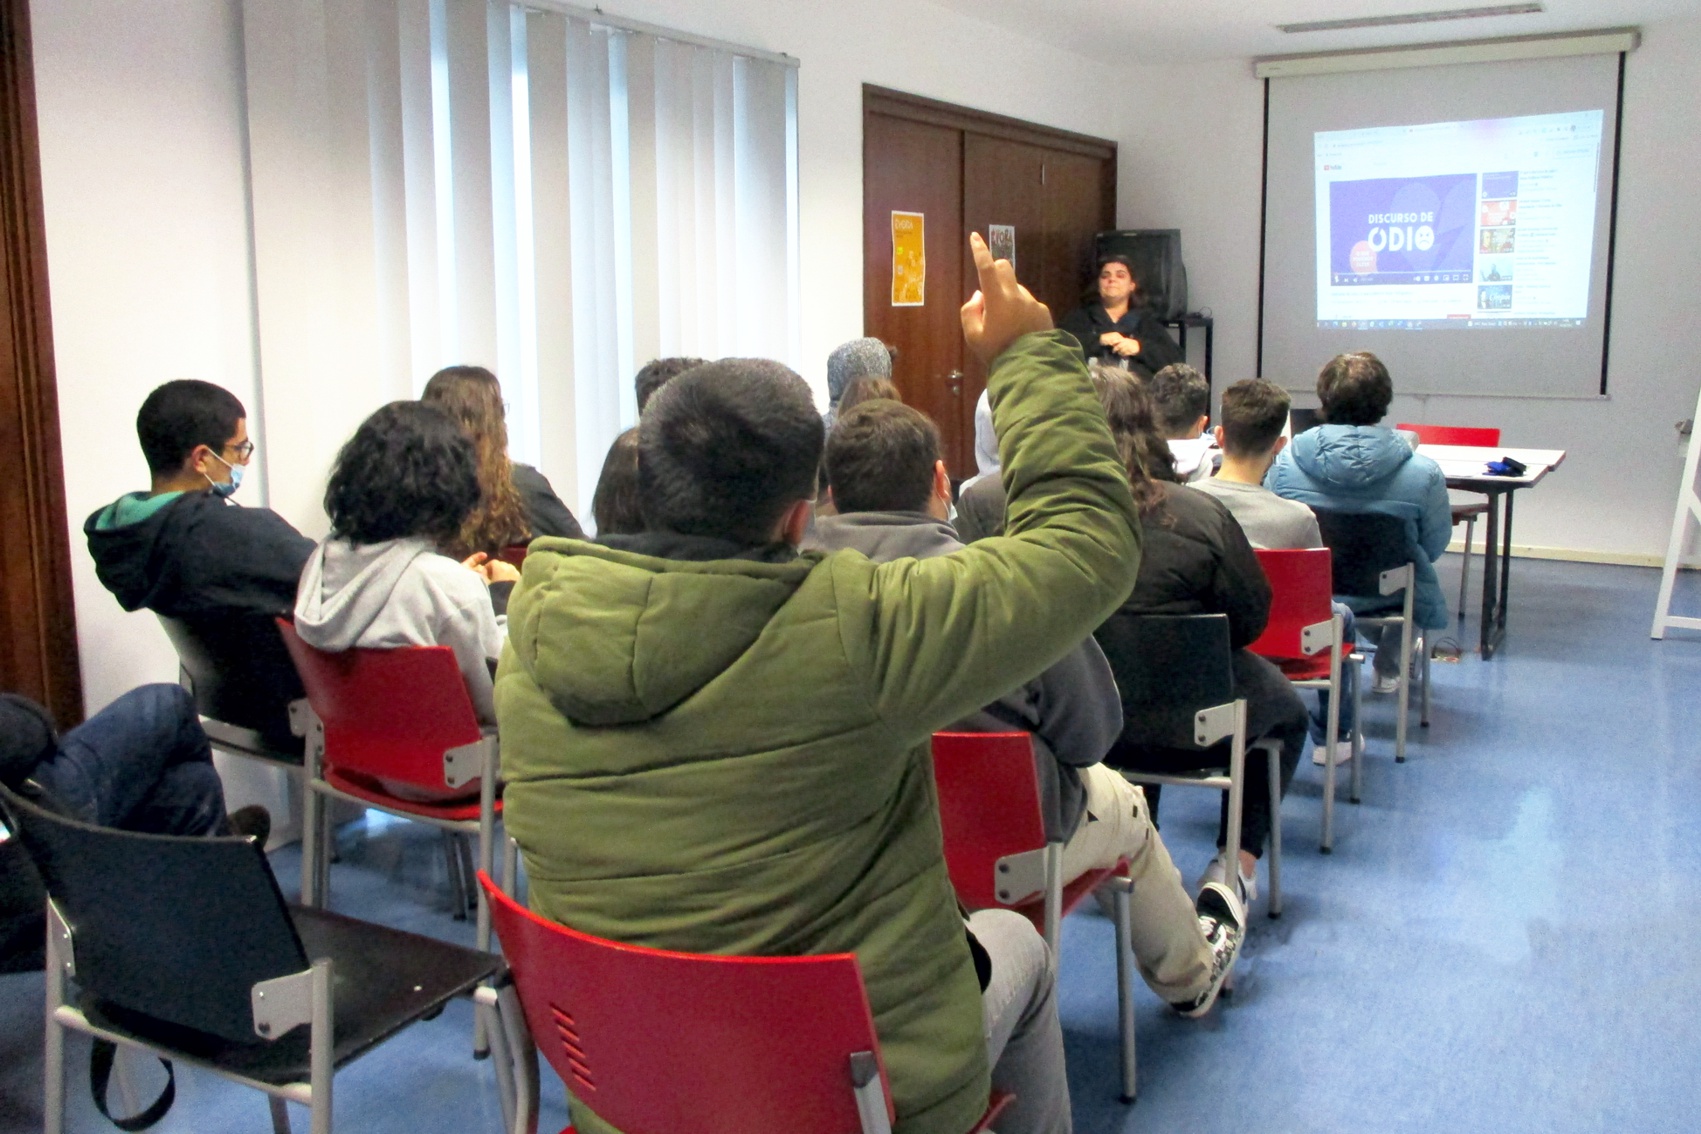 Técnica do IPDJ de Évora, com os alunos e um professor da Escola Profissional da Região Alentejo, na sala de formação do IPDJ de Évora.